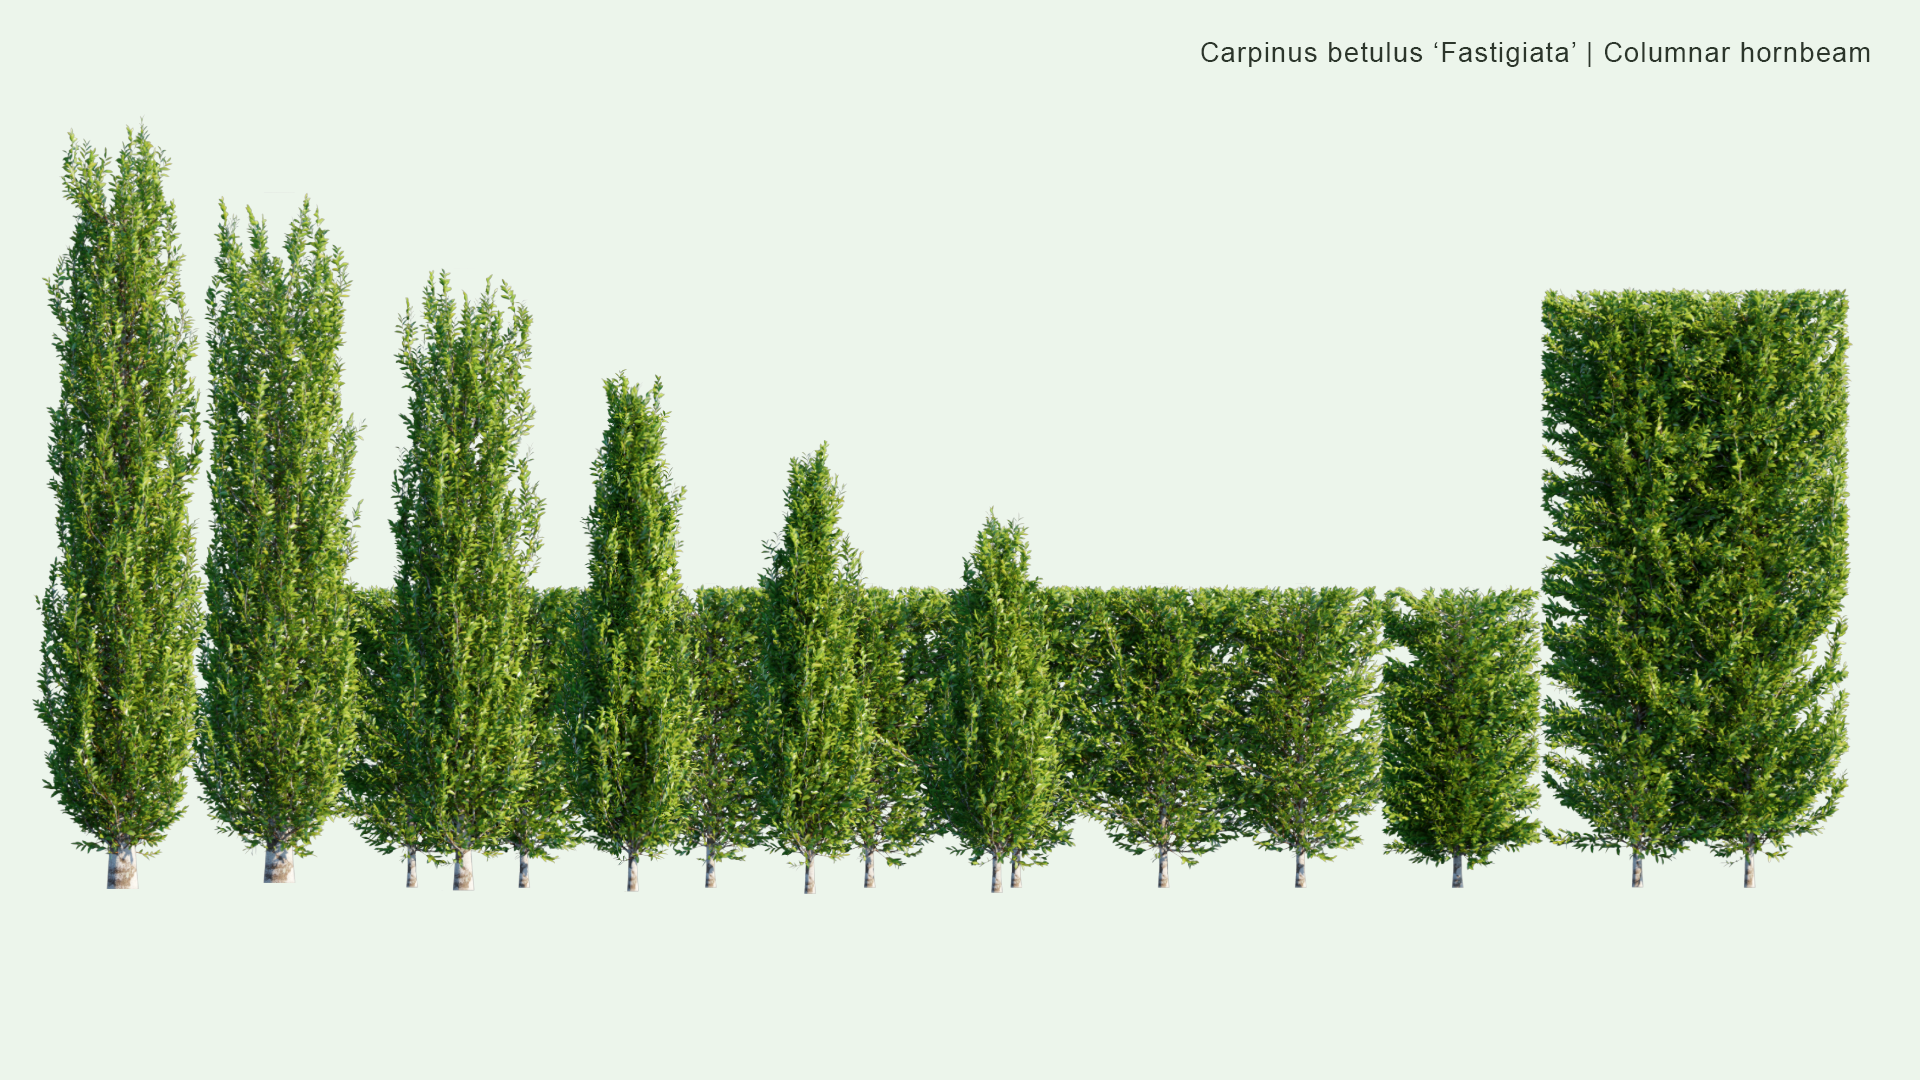 2D Carpinus Betulus ‘Fastigiata’ - Columnar Hornbeam